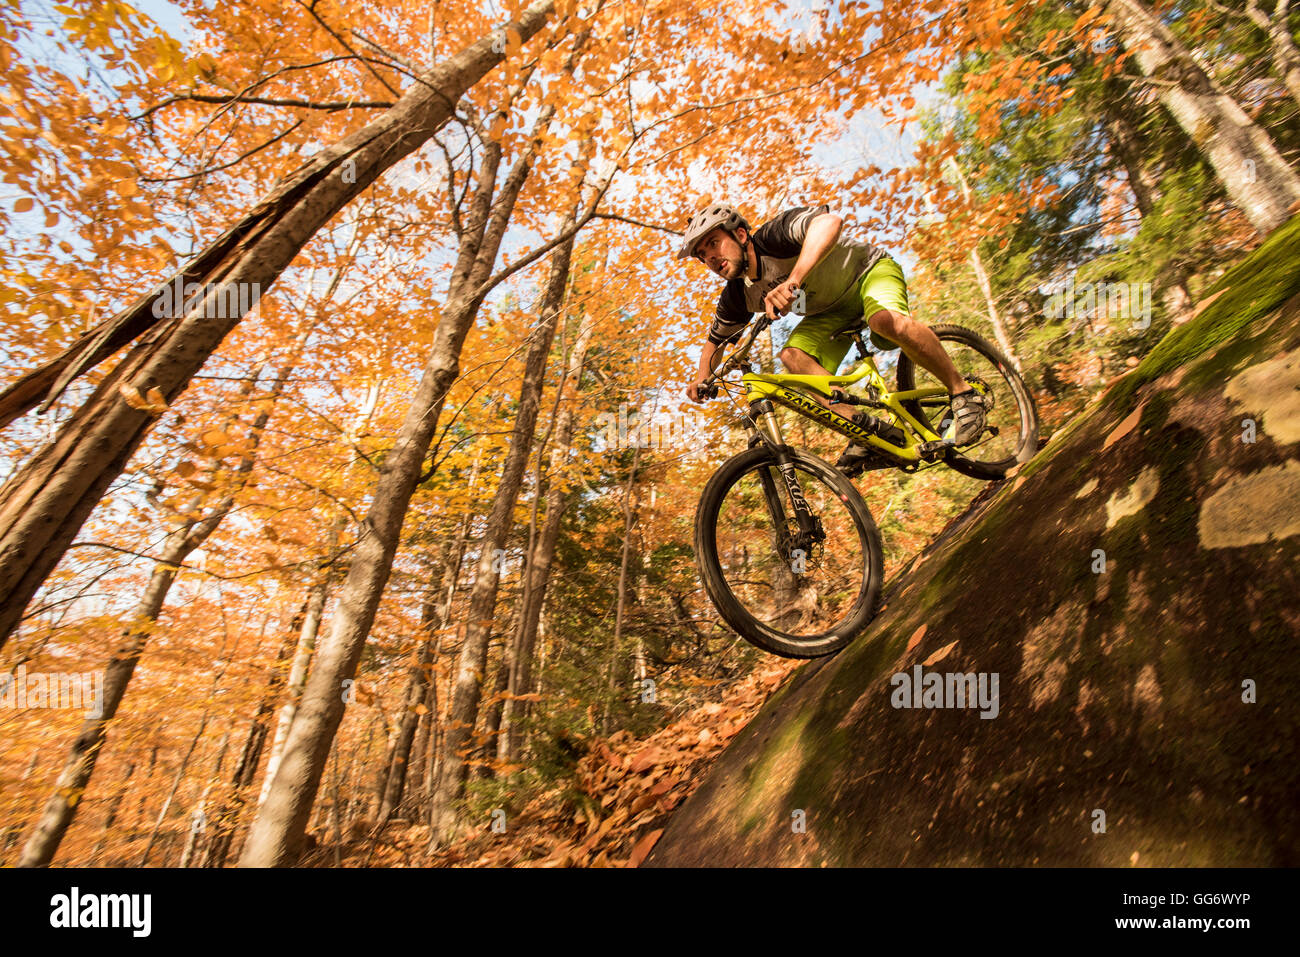 Autumn mountain biking in the WHite Mountains of New Hampshire. Stock Photo